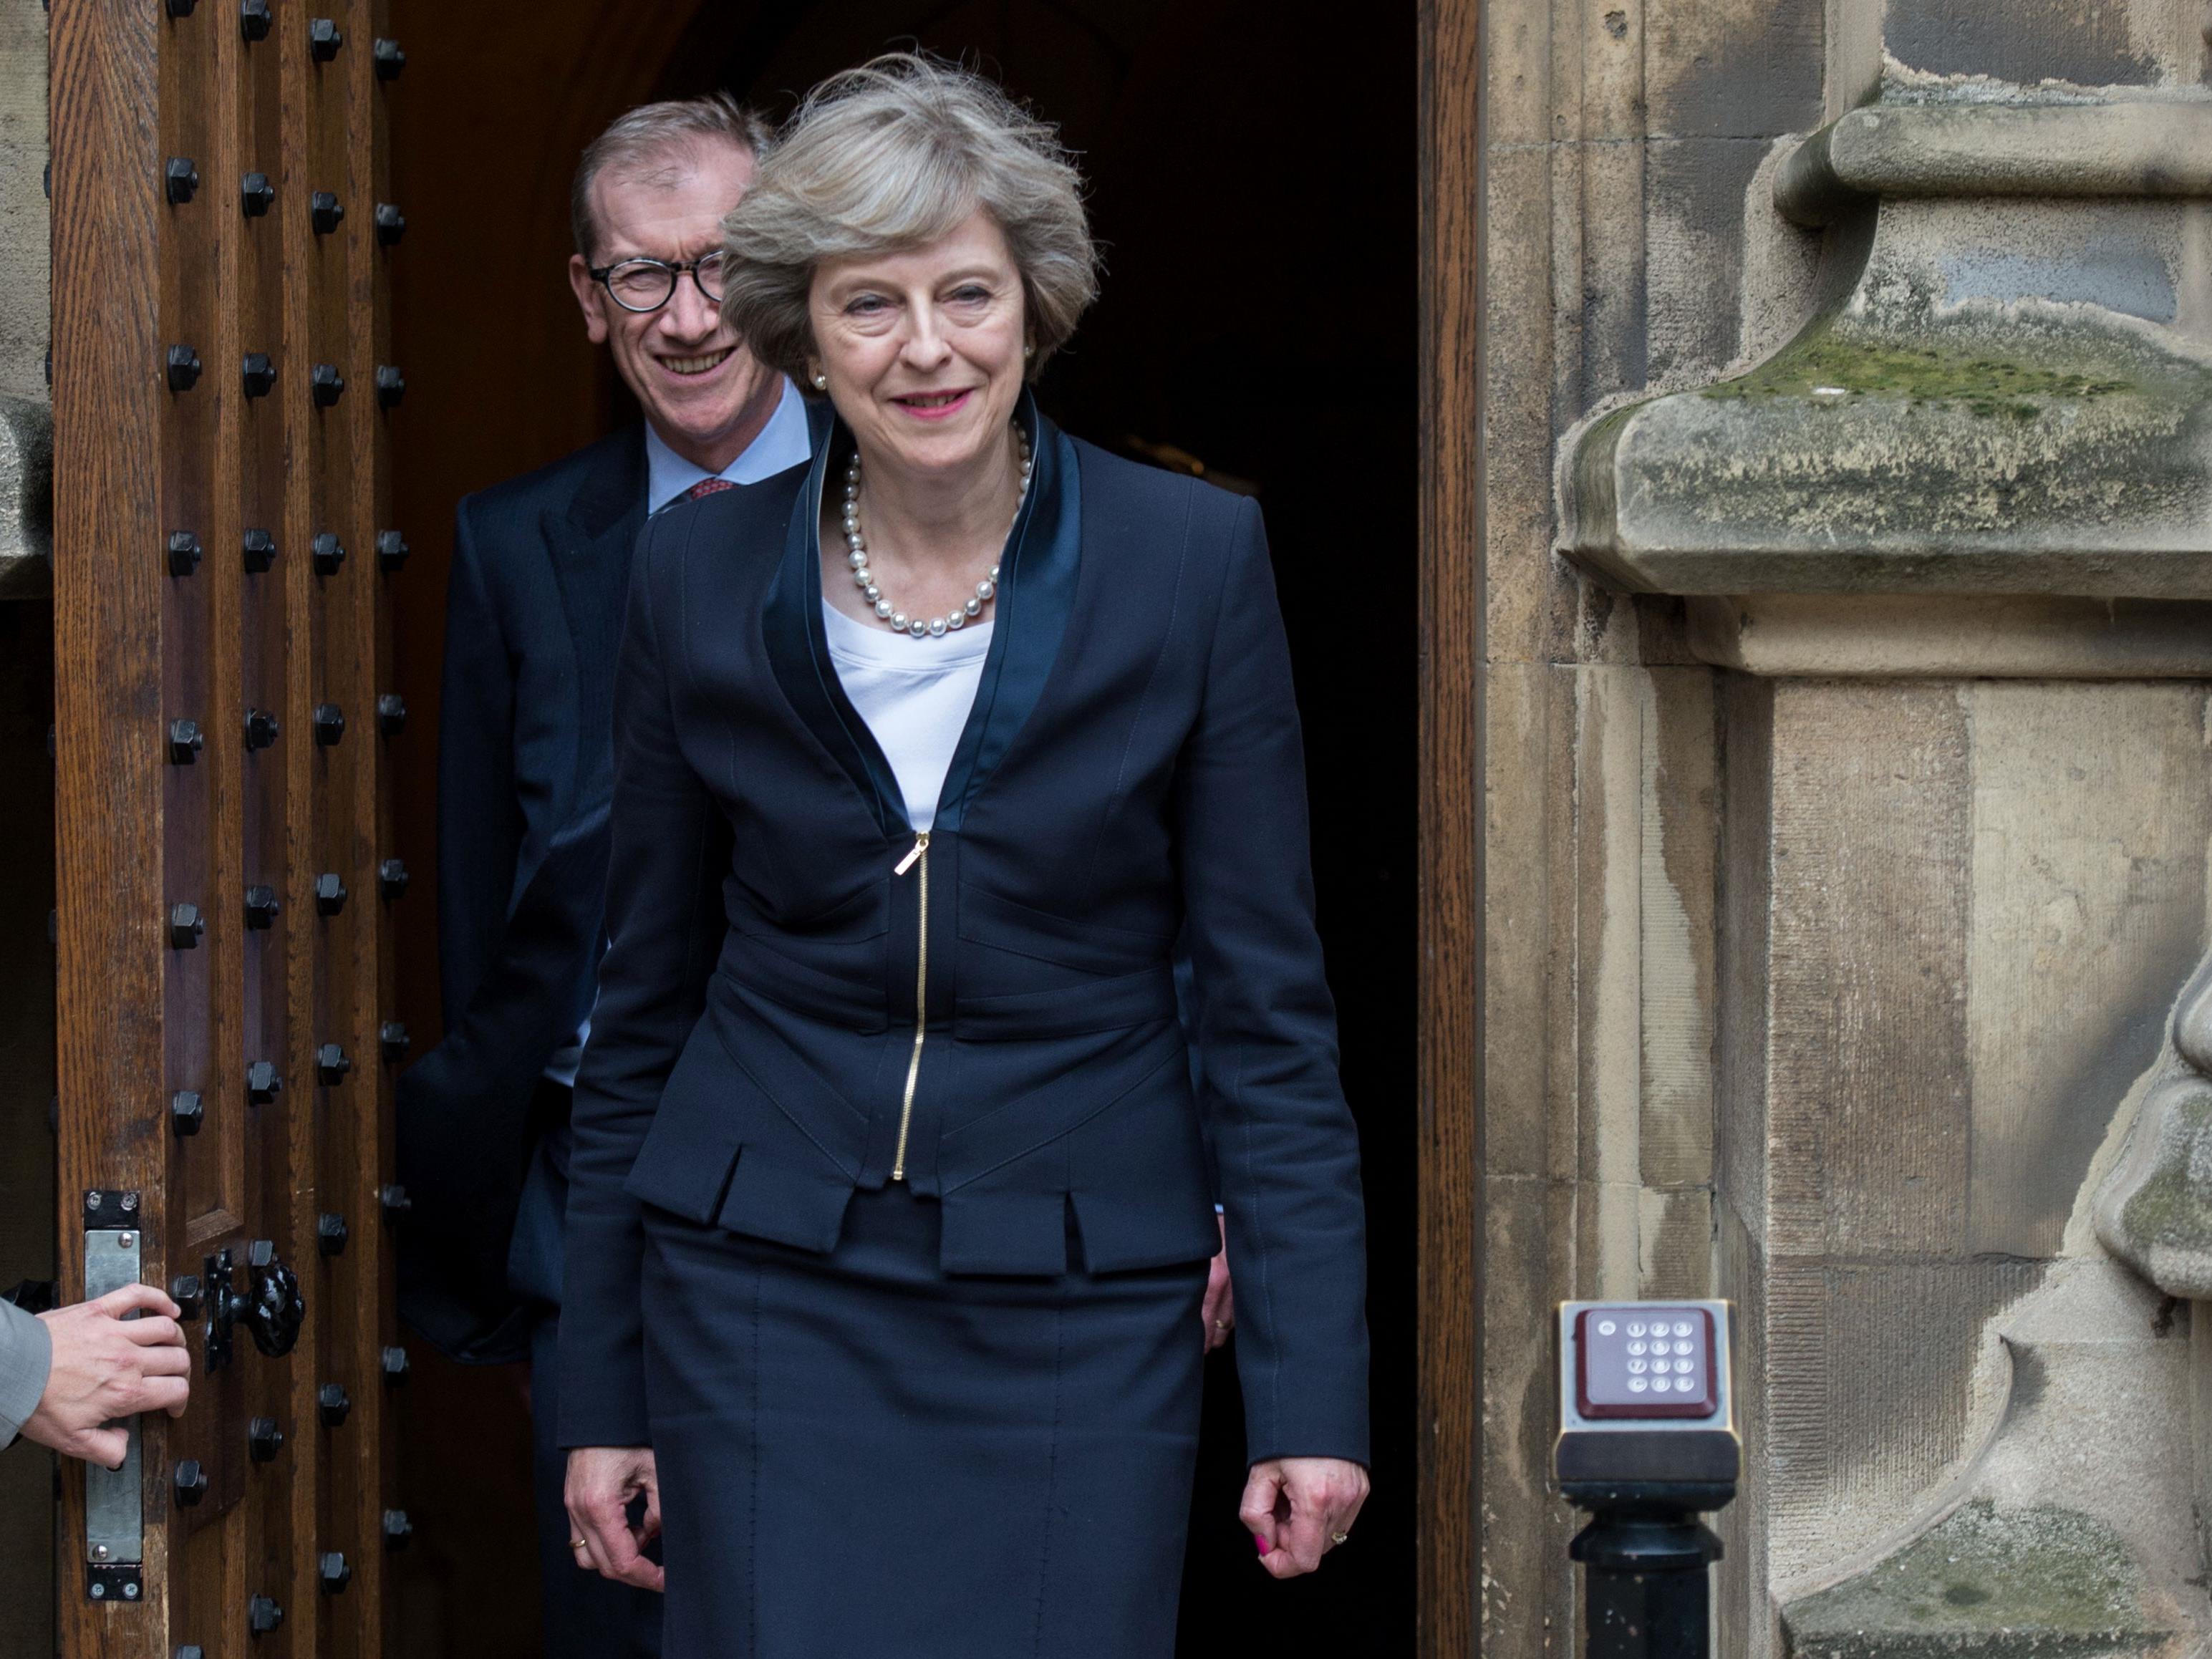 Glauben Sie, dass die neue britische Premierministerin Theresa May ihr Land bald aus der EU hinausführen wird?